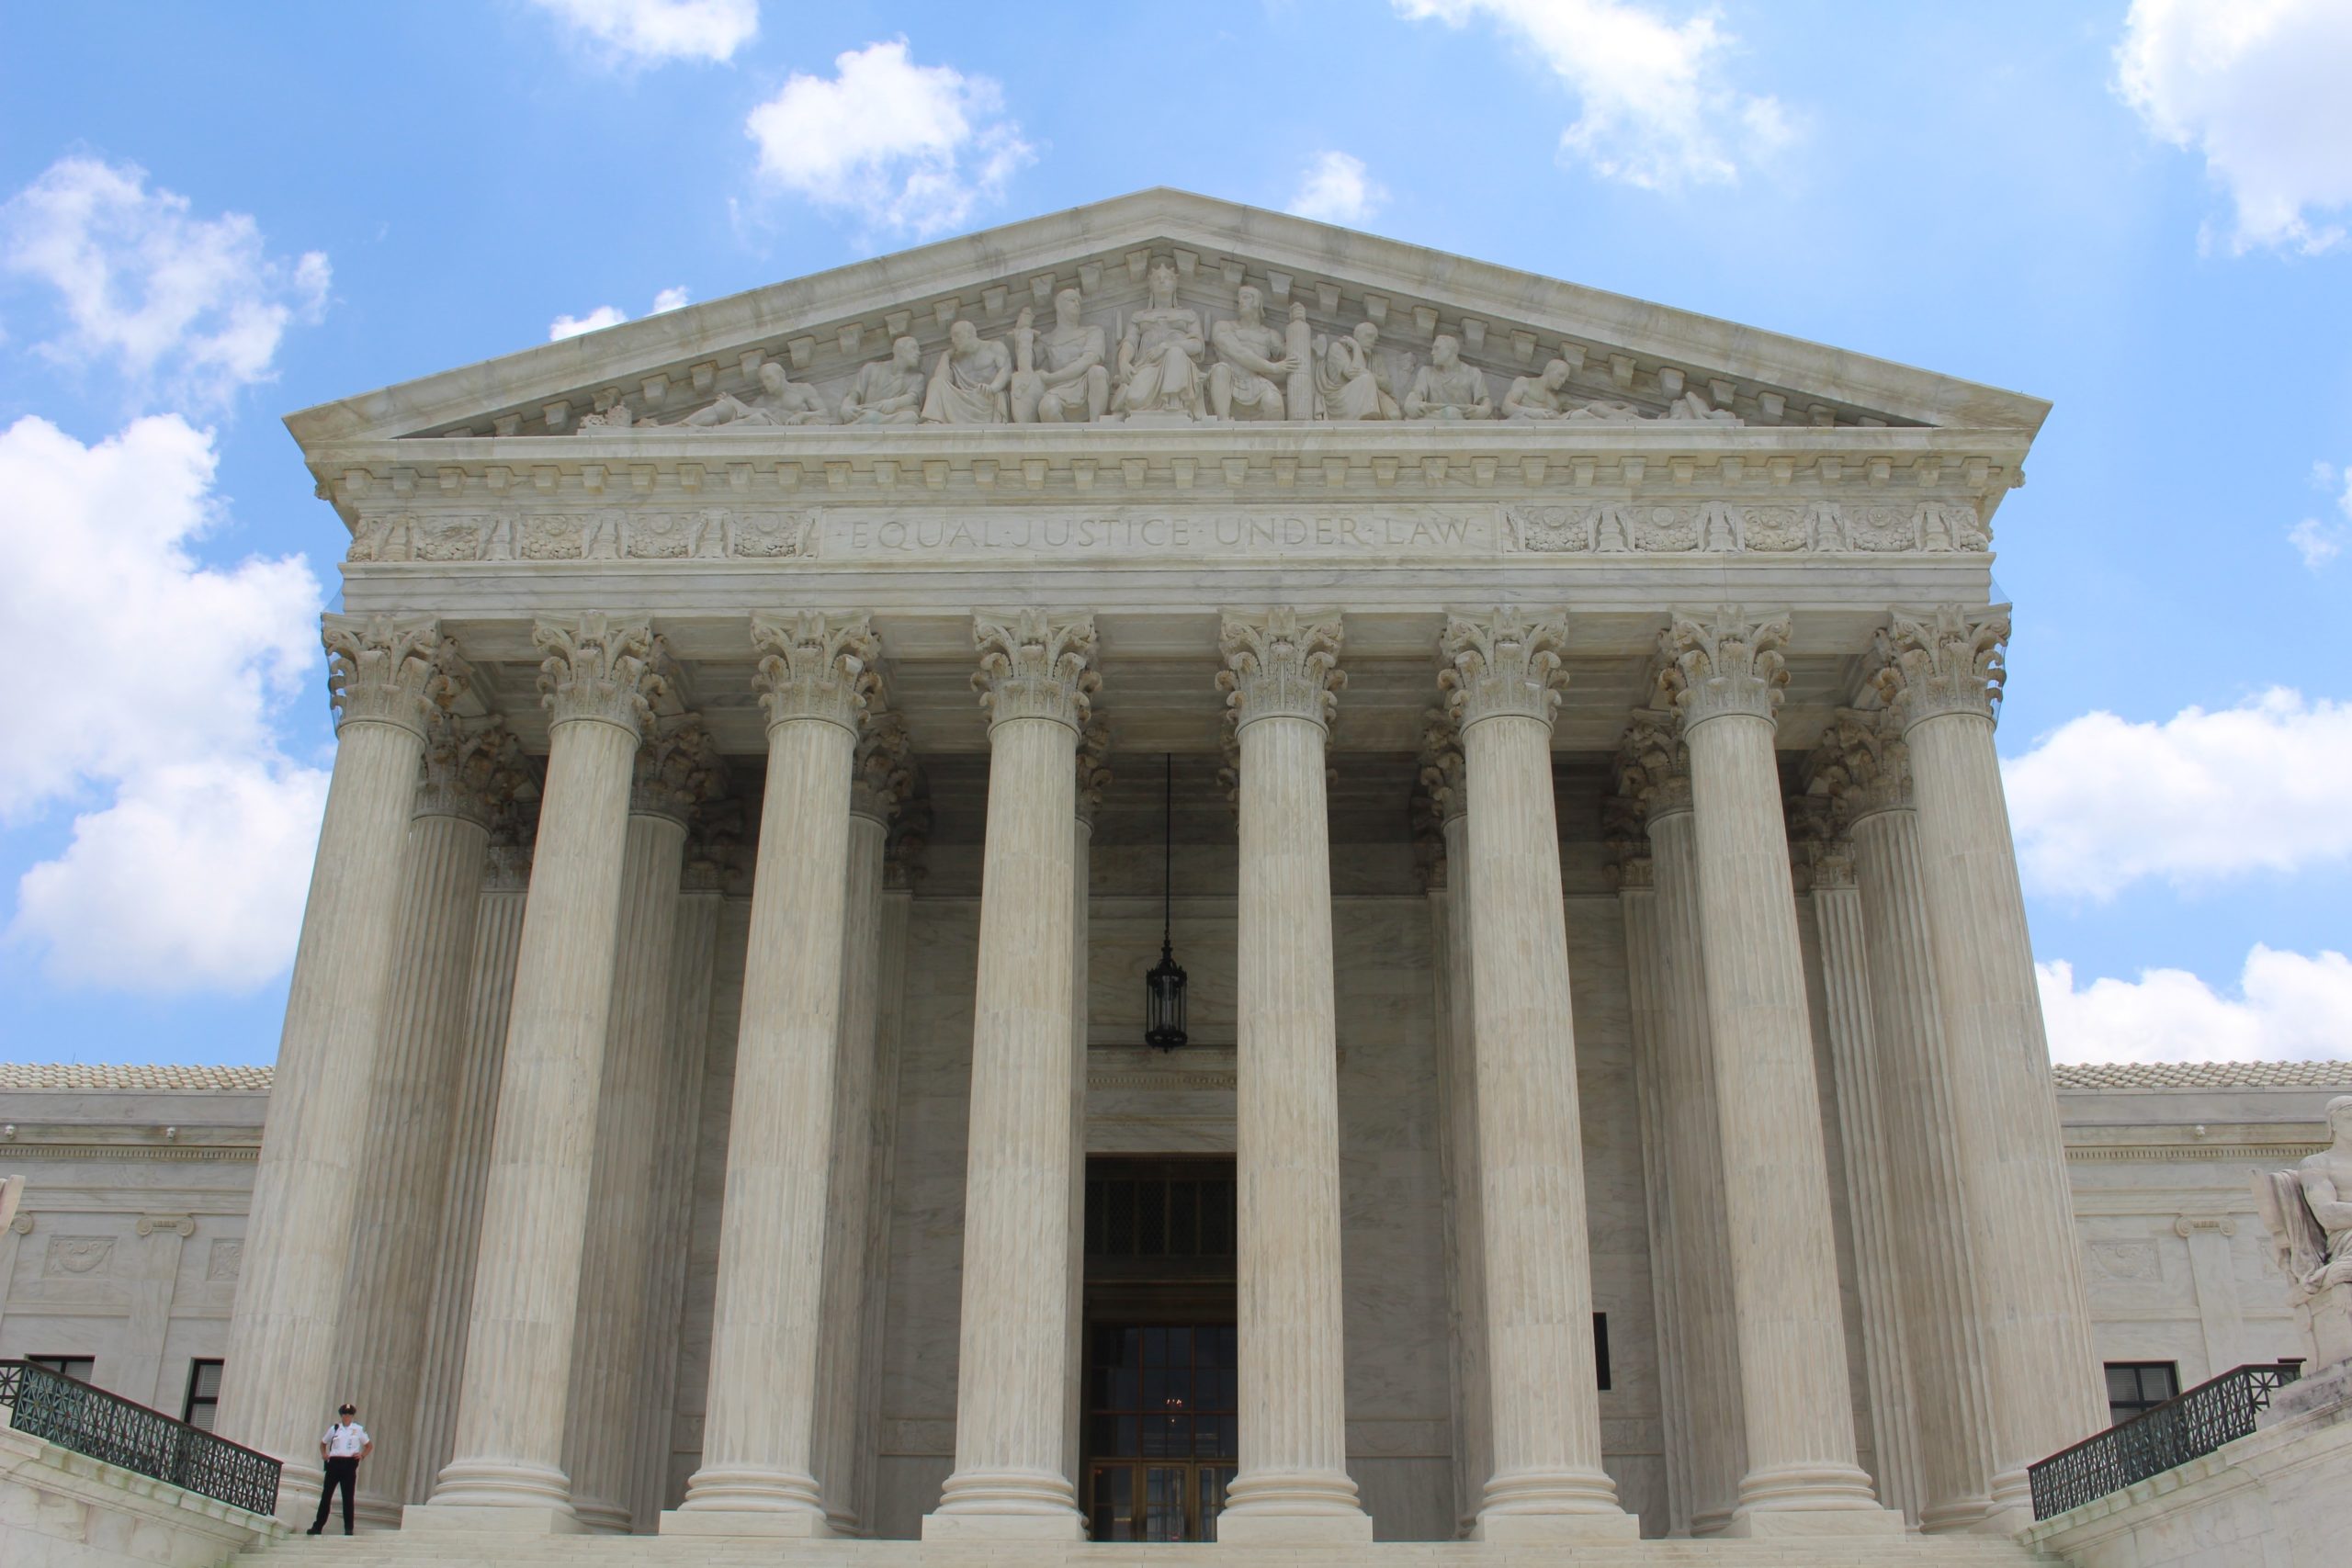 Tenth Circuit Court Plaintiffs Respond to Supreme Court Action